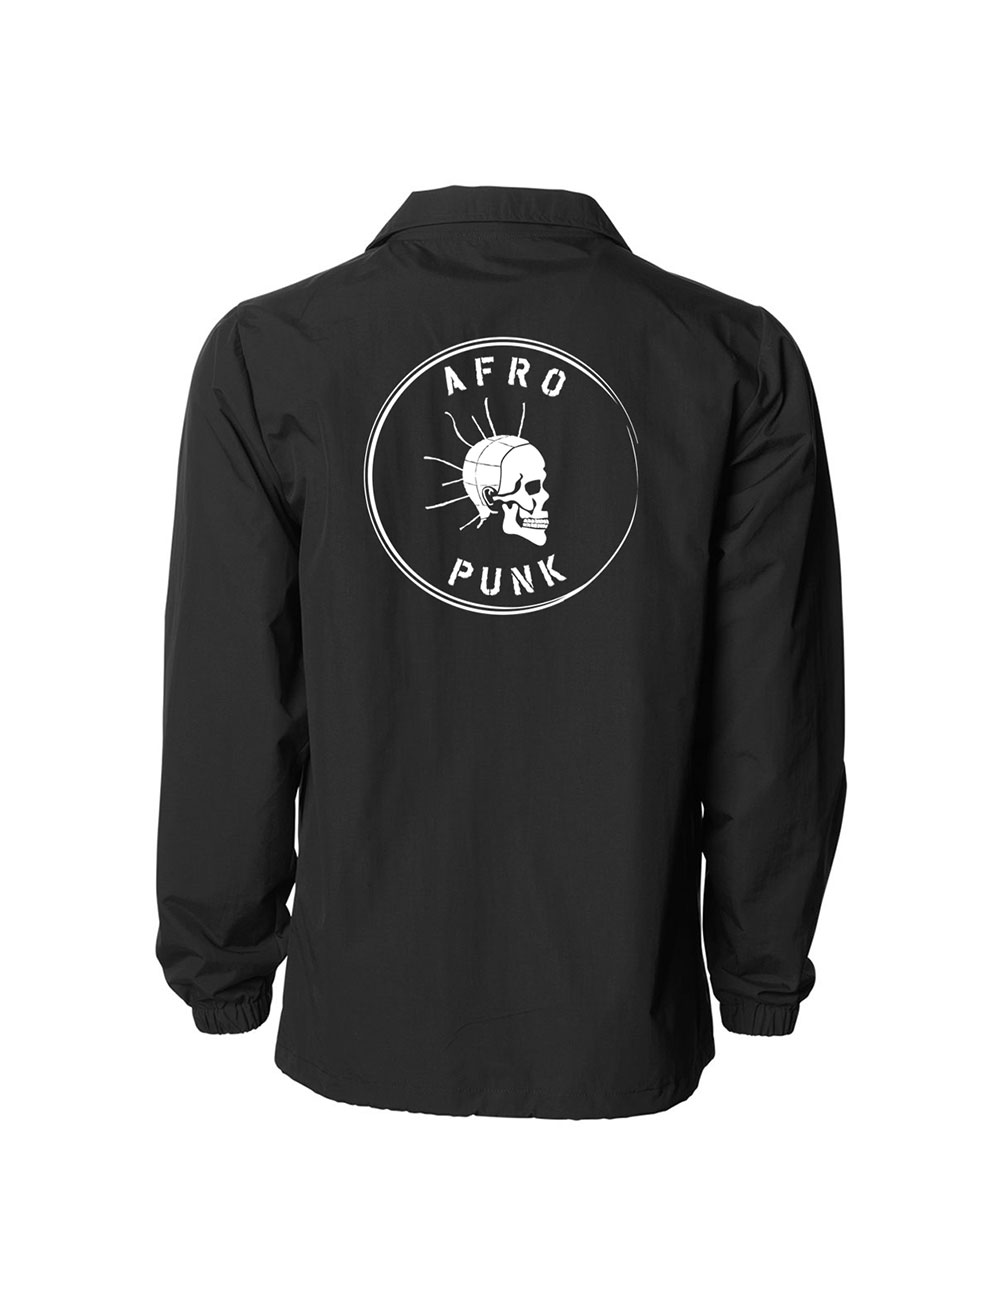 Afropunk - Official Merch Shop - Outerwear - Skull Coaches Jacket Back